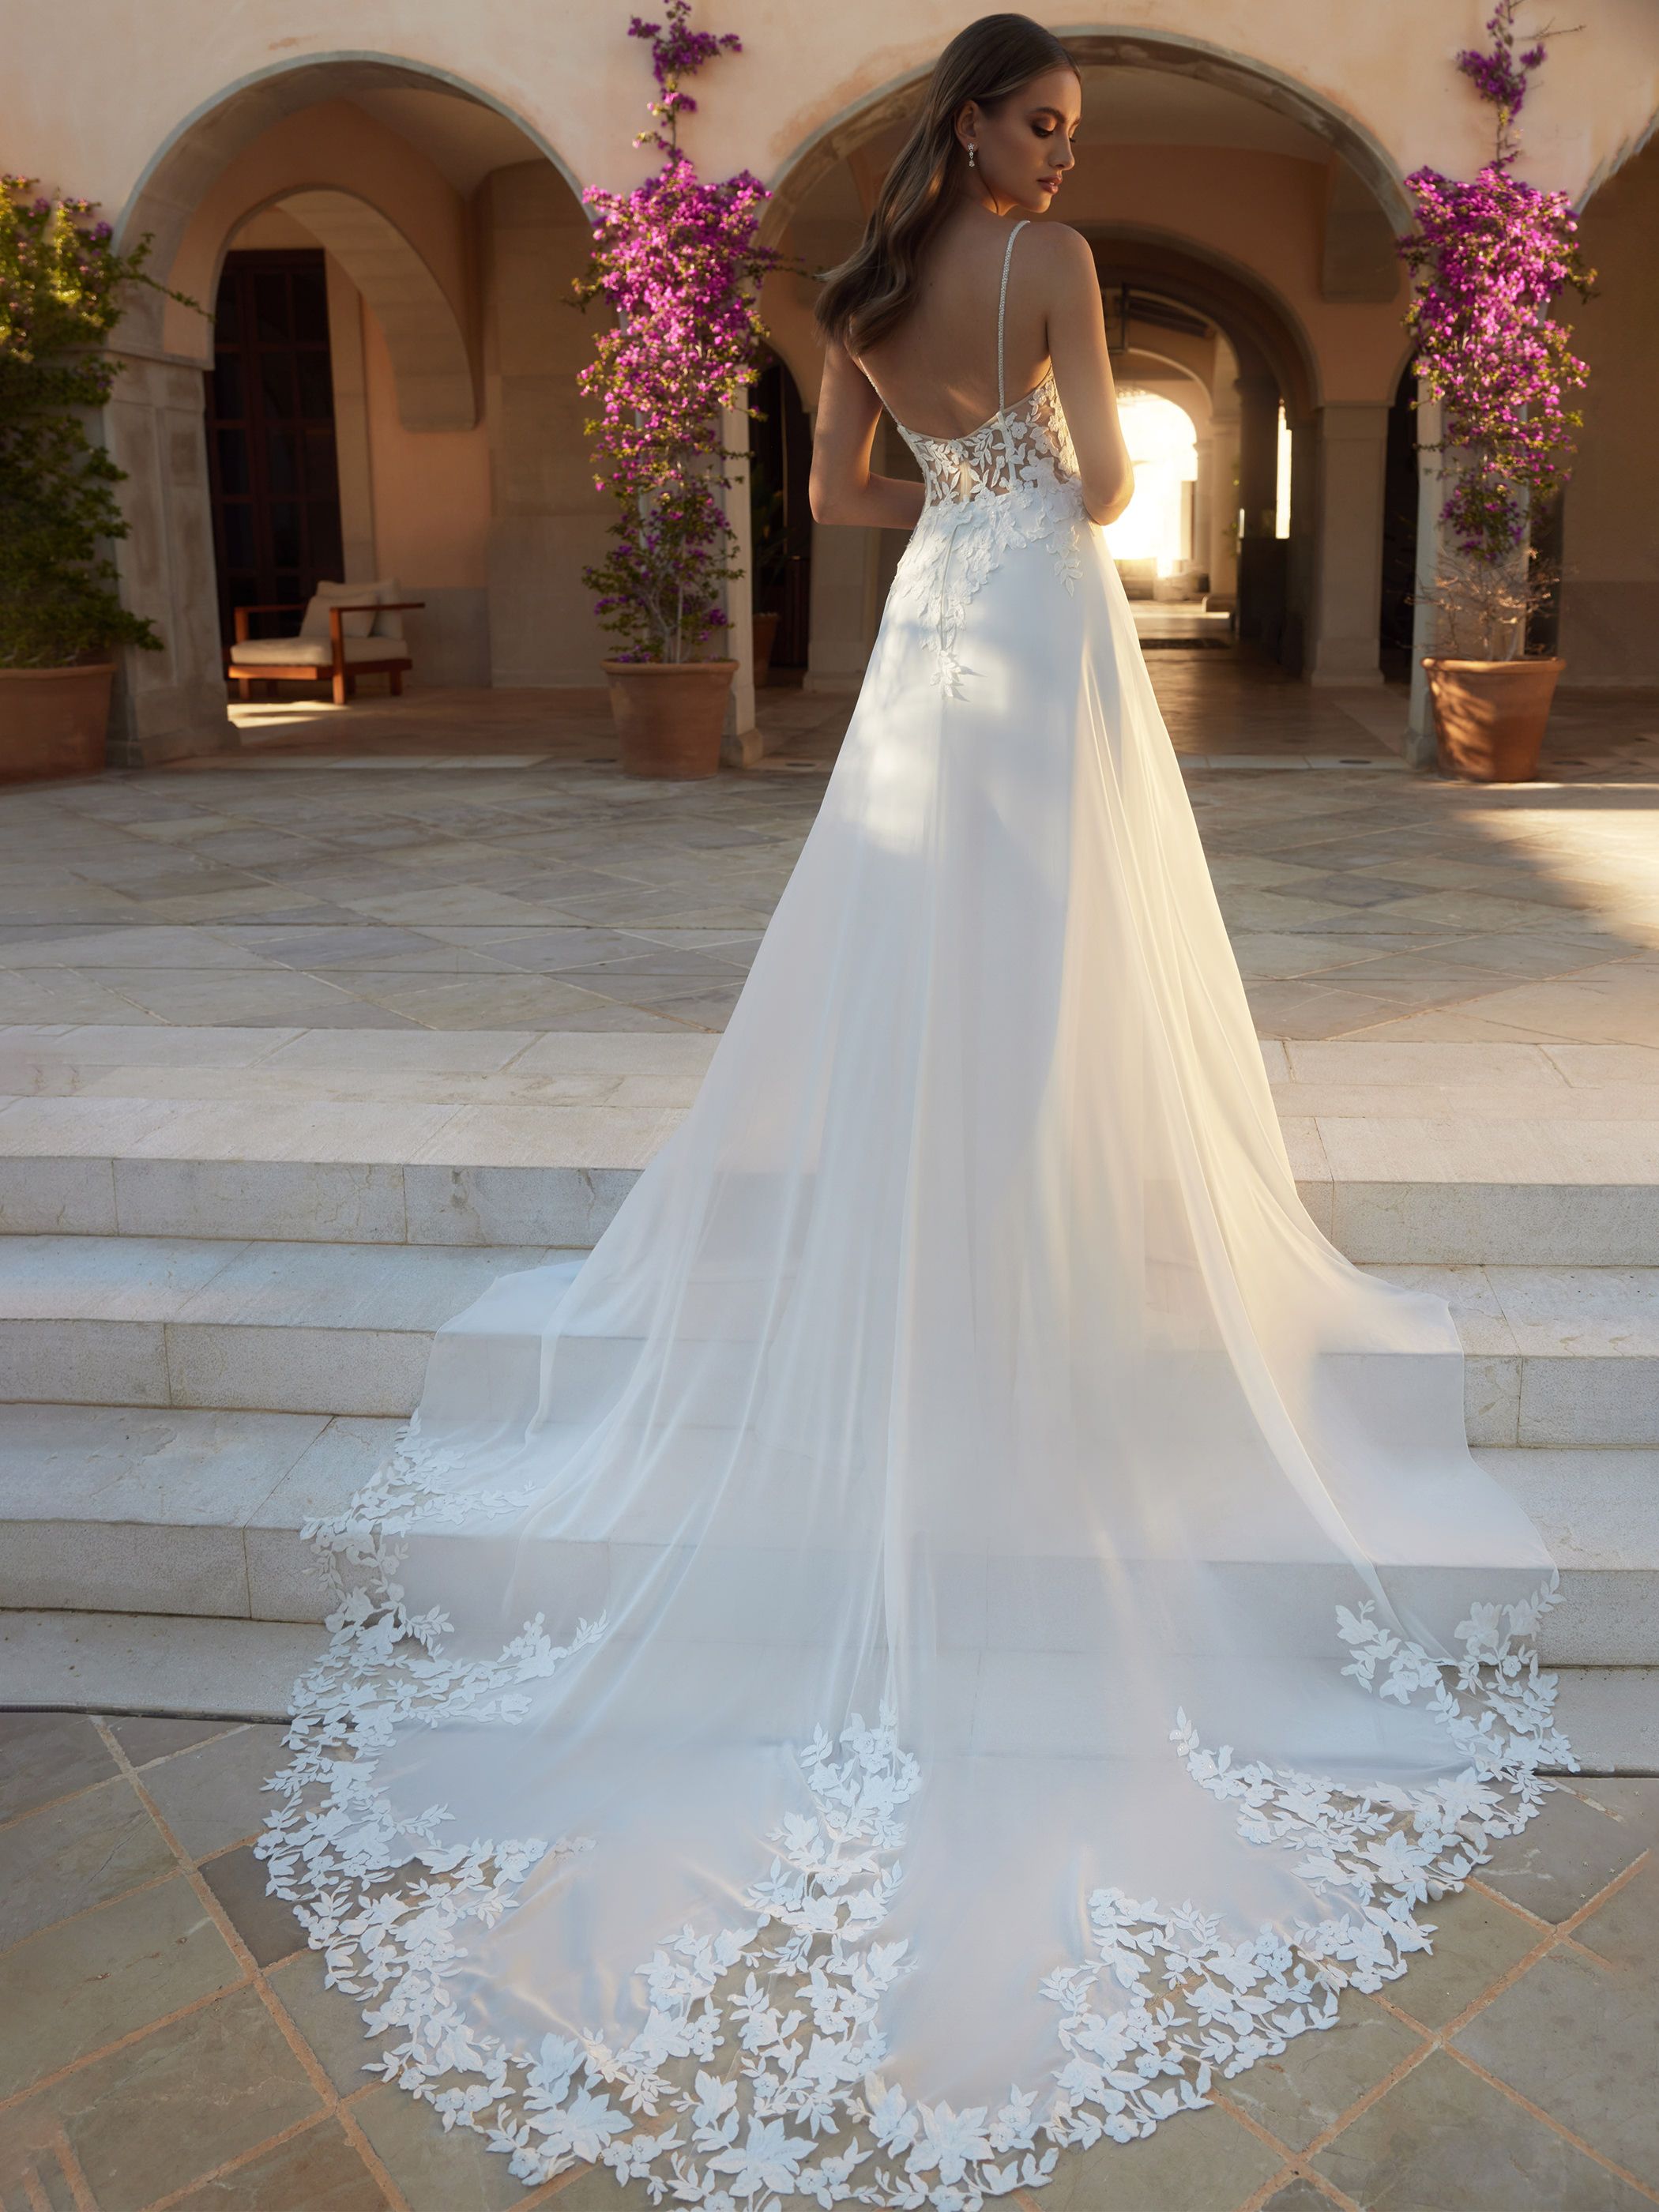 Beryl wedding dress by Bianco Evento